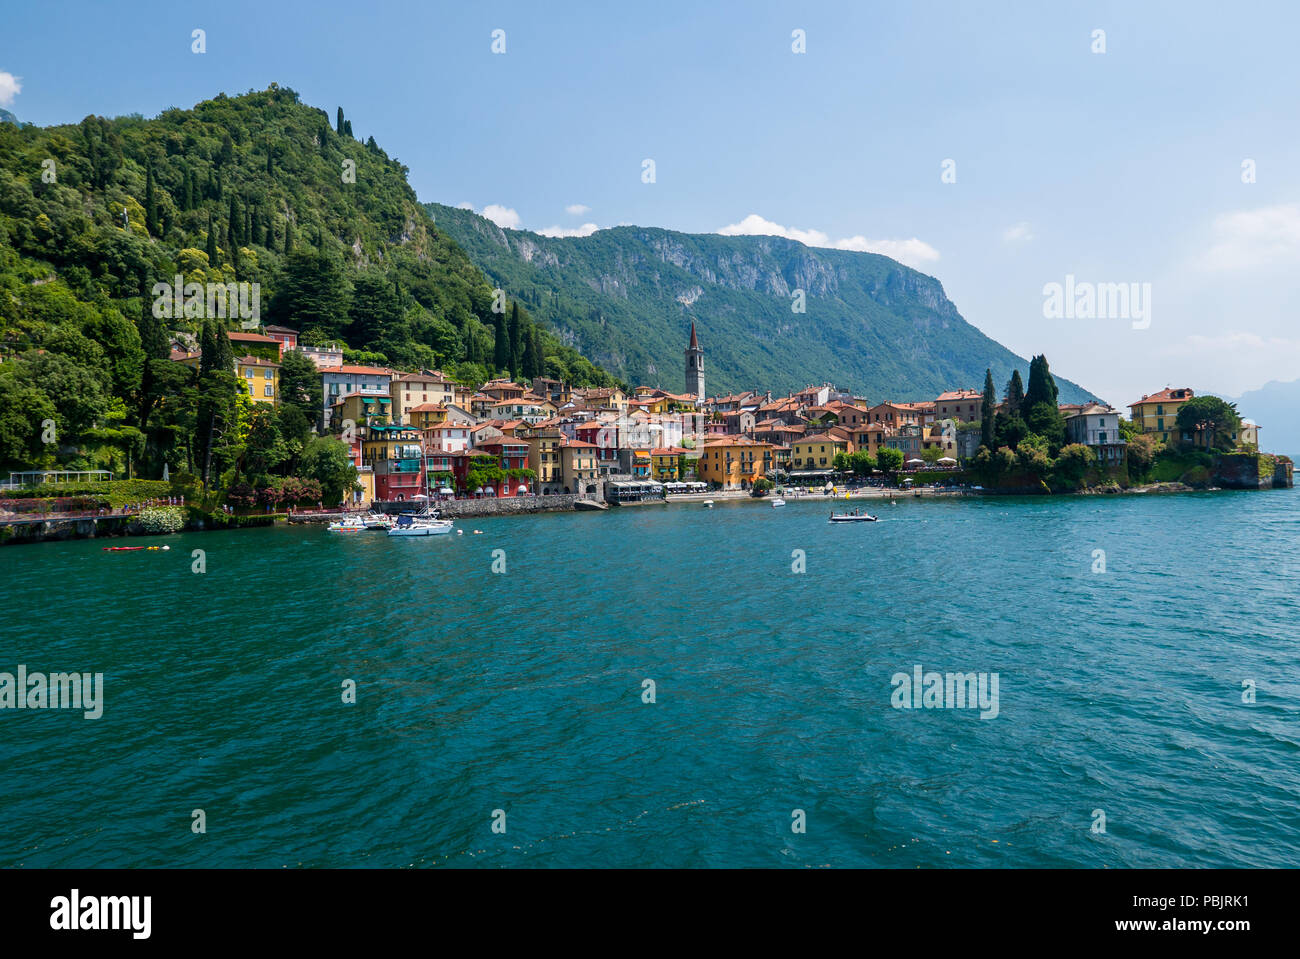 Anzeigen von Varenna Stadt eines der kleinen schönen Städte am Comer See von der Fähre, Lombardei, Italien Stockfoto